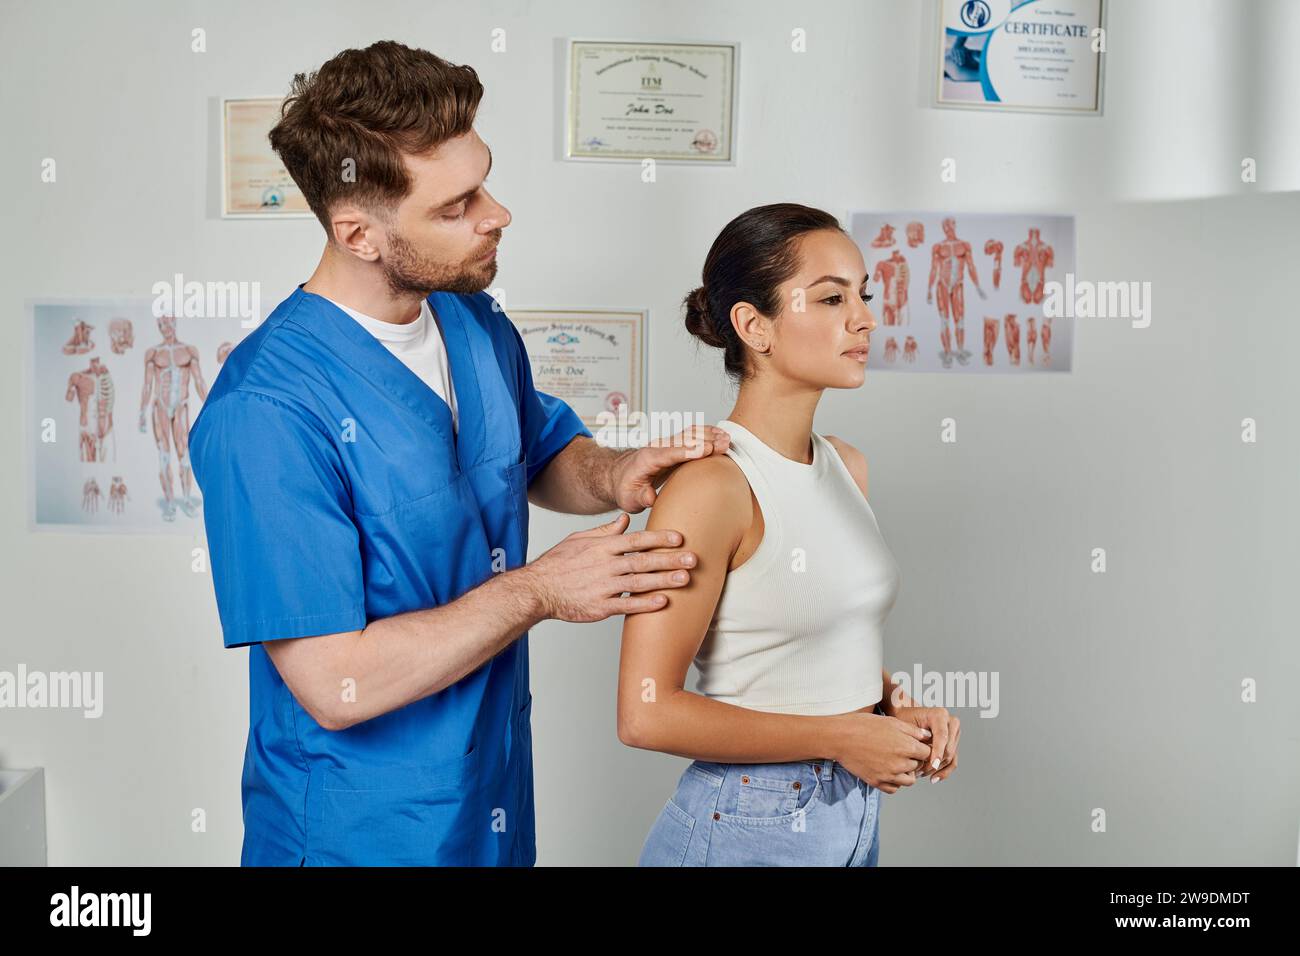 bel medico in costume medico blu che controlla i muscoli della sua giovane paziente femminile, assistenza sanitaria Foto Stock